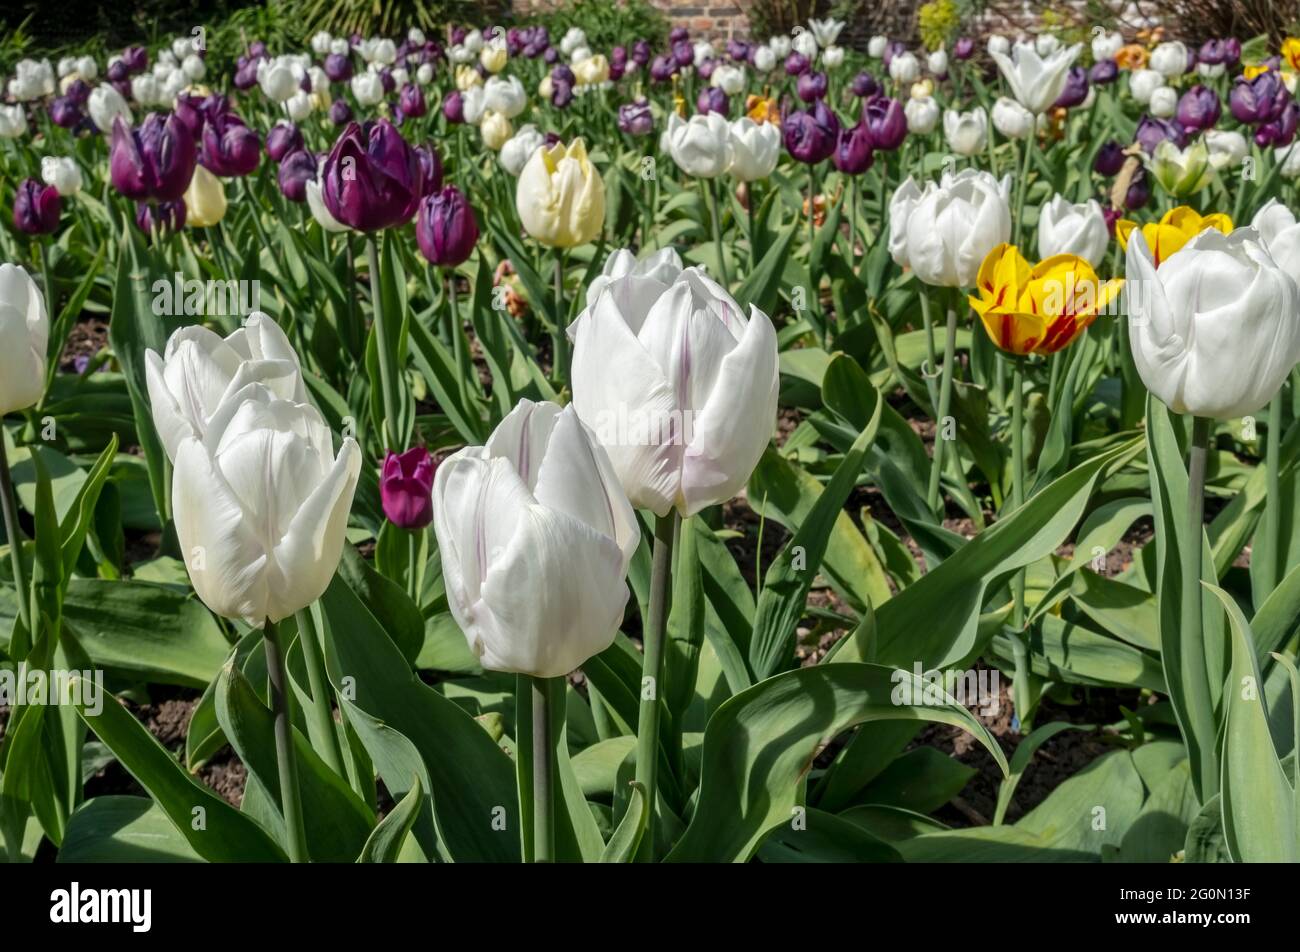 Gros plan de tulipes violettes et blanches fleurs fleuries dans un jardin frontière au printemps Angleterre Royaume-Uni Grande-Bretagne Banque D'Images